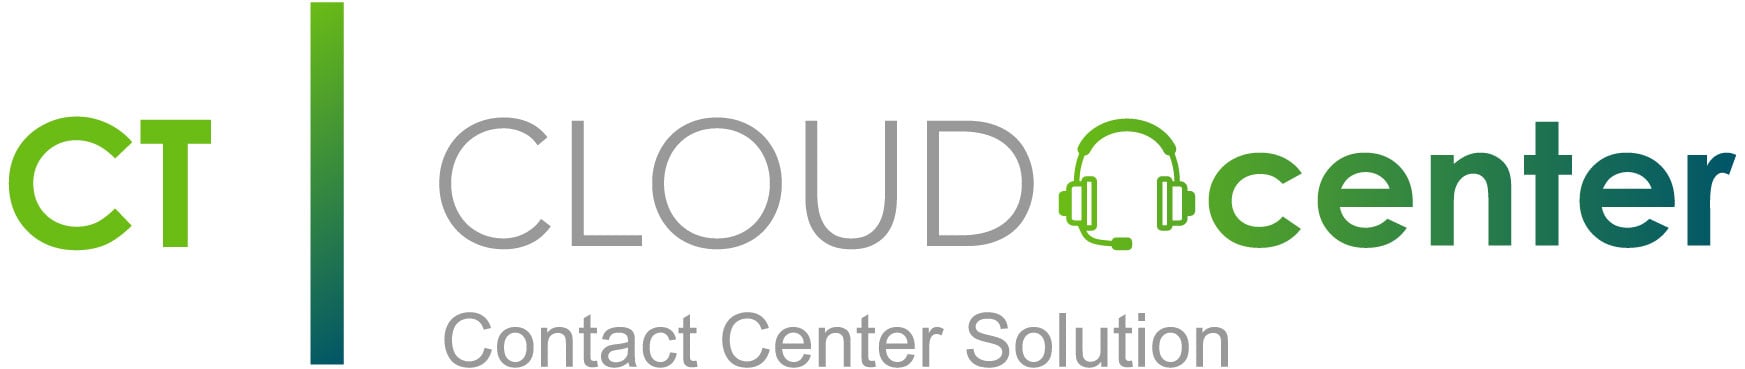 CT-Cloud-Contact-Center_logo